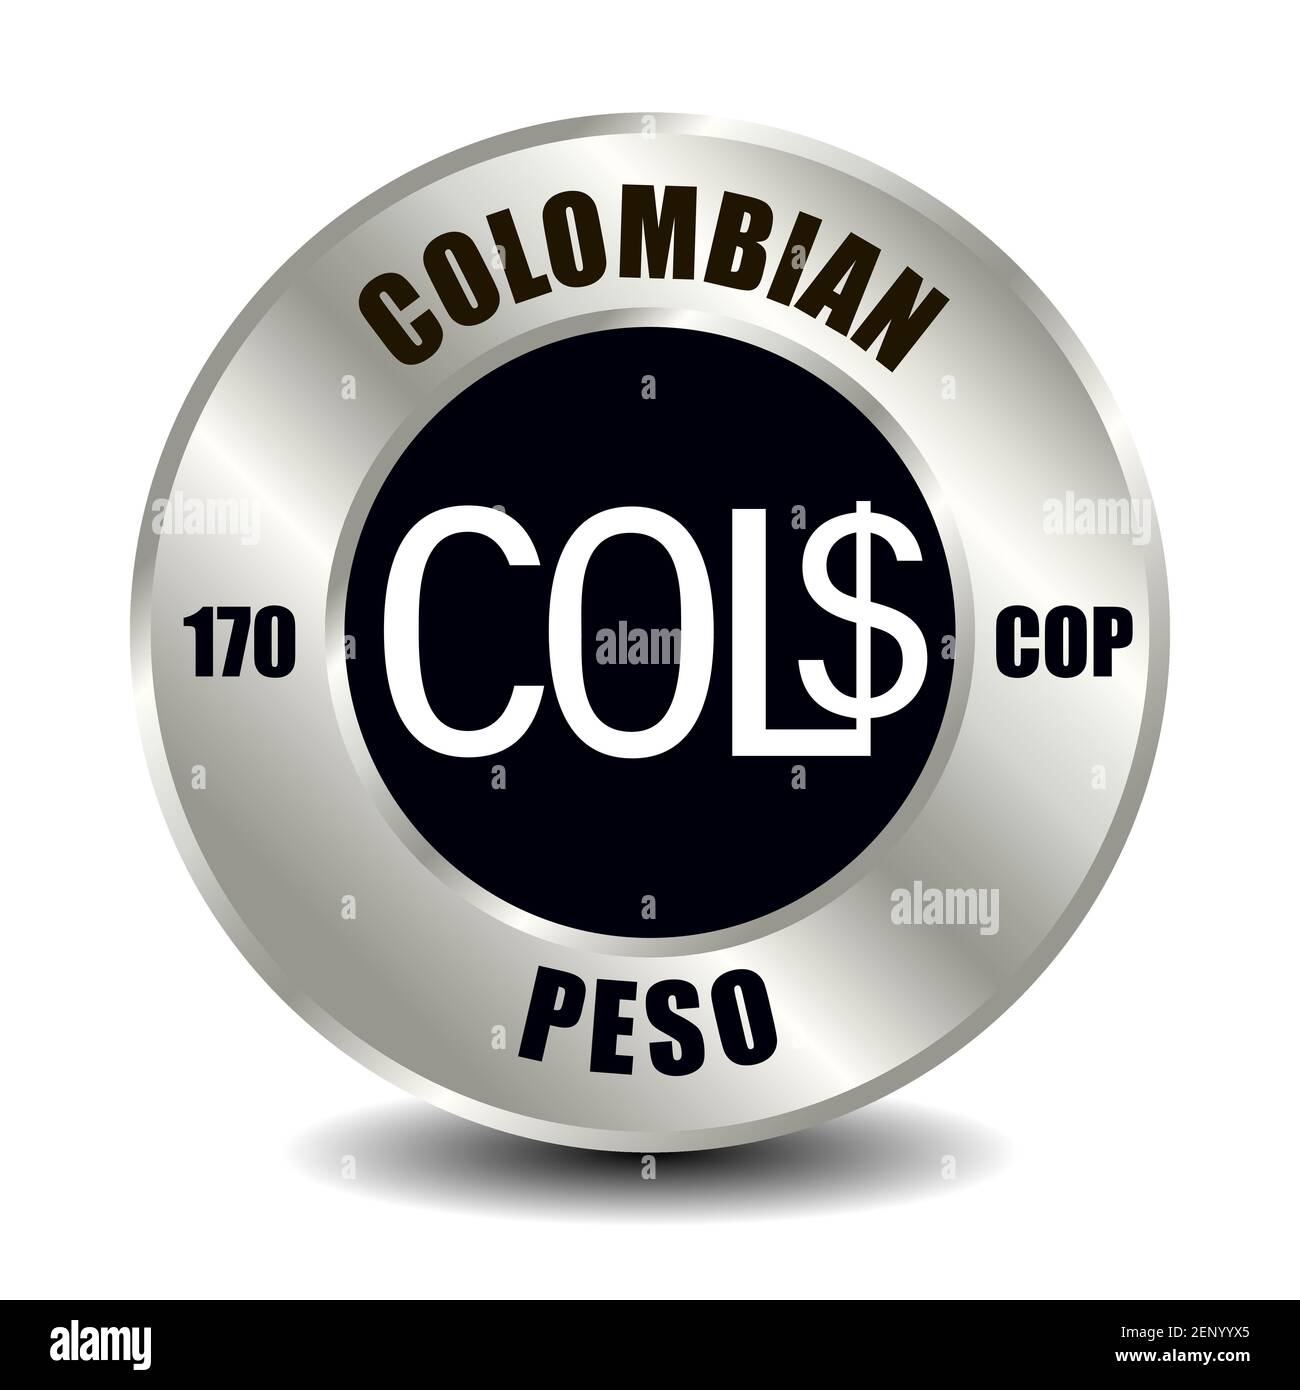 Kolumbien Geldsymbol isoliert auf runder Silbermünze. Vektorzeichen des Währungssymbols mit internationalem ISO-Code und Abkürzung Stock Vektor